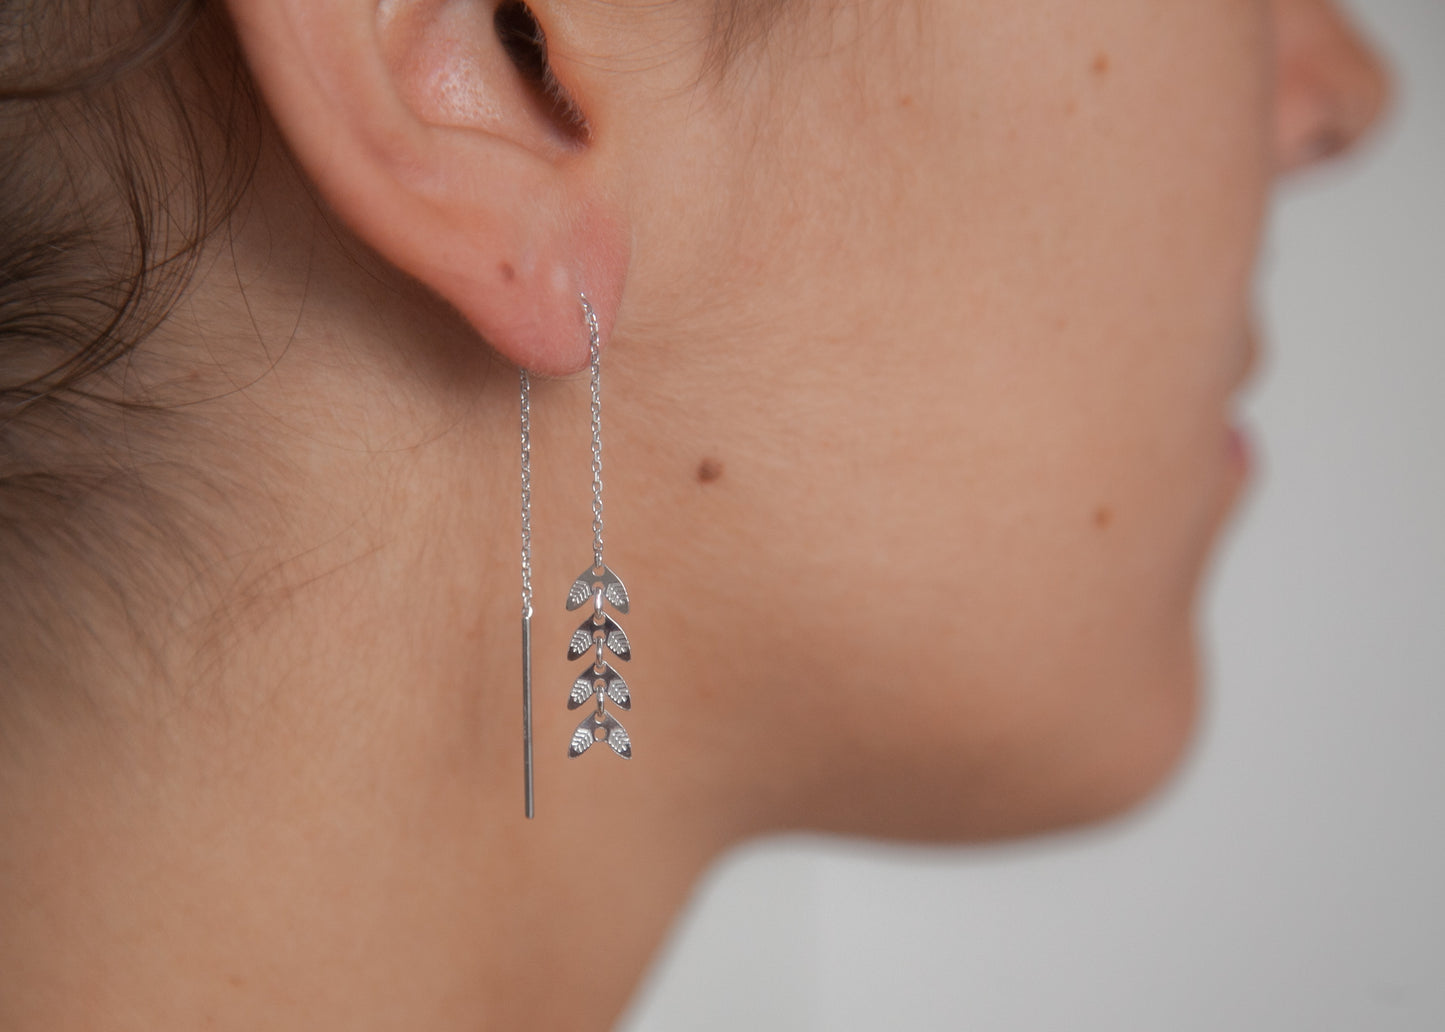 Hängende Ohrkettchen in Blattform aus Silber - Ohrringe für Damen